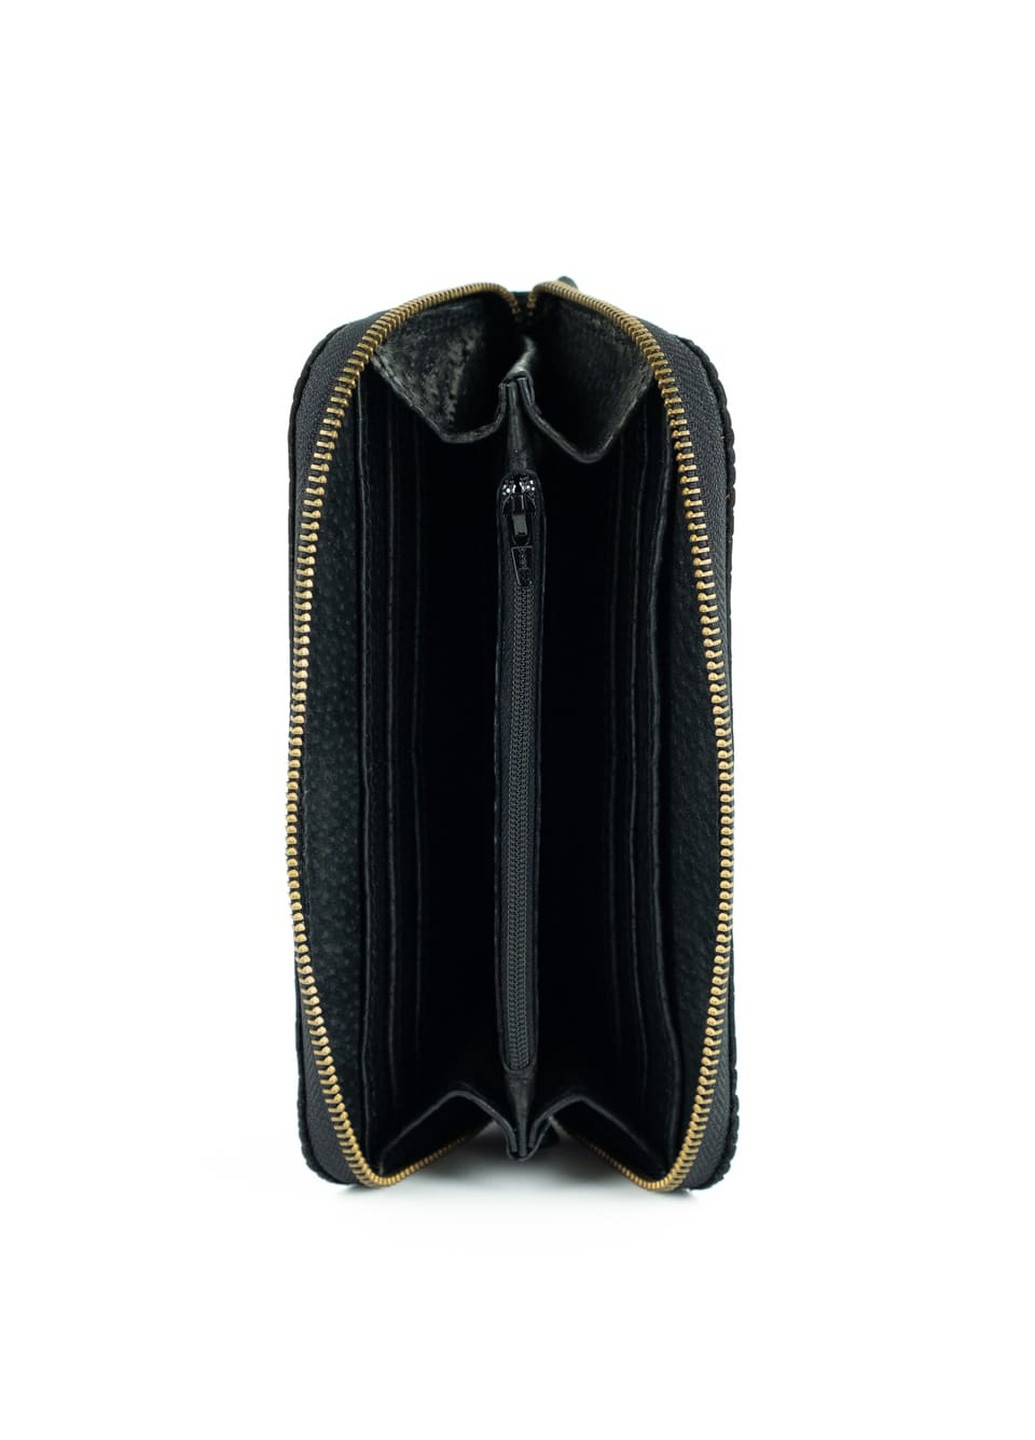 Кожаный портмоне кошелек зиппер на молнии Teo черный под крокодила Kozhanty (252315379)